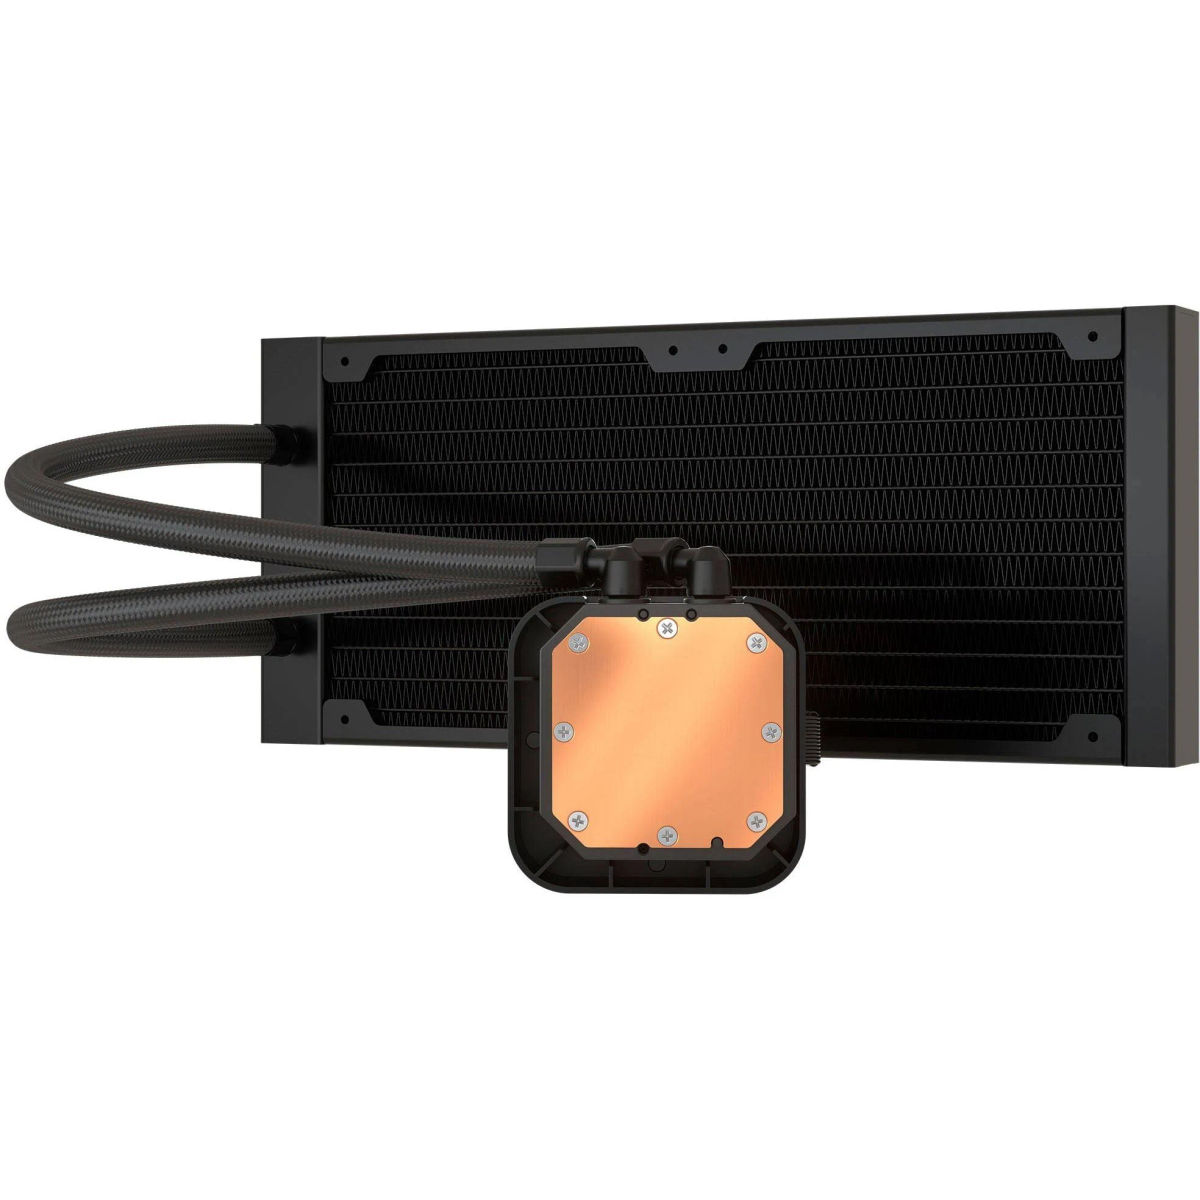 CORSAIR Elite Wasserkühler ICue schwarz LCD H100i Wasserkühler, CPU